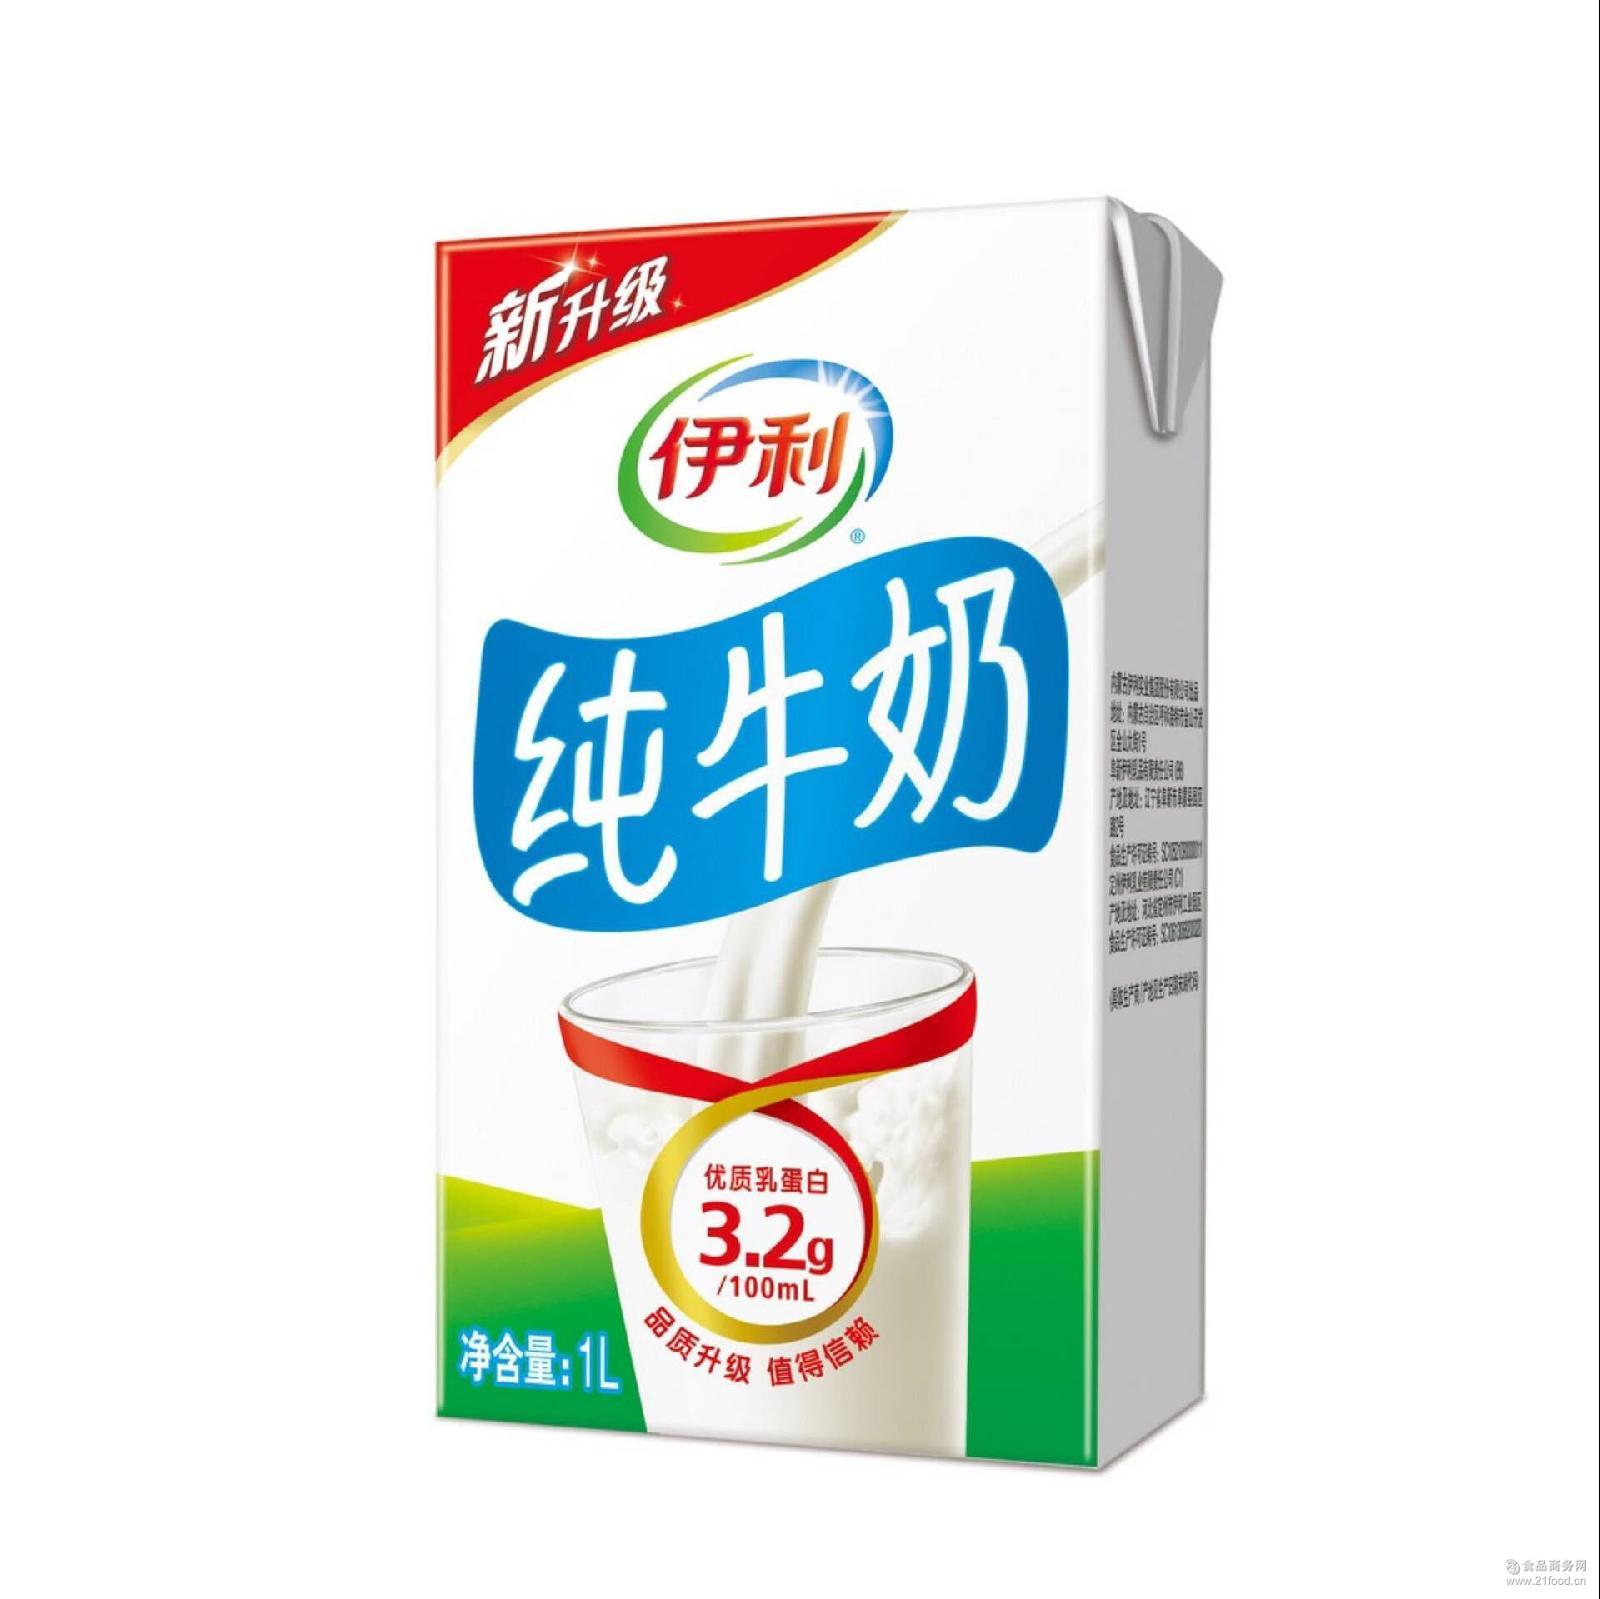 【伊利】无菌砖纯牛奶250ml*40盒 - 大淘客联盟